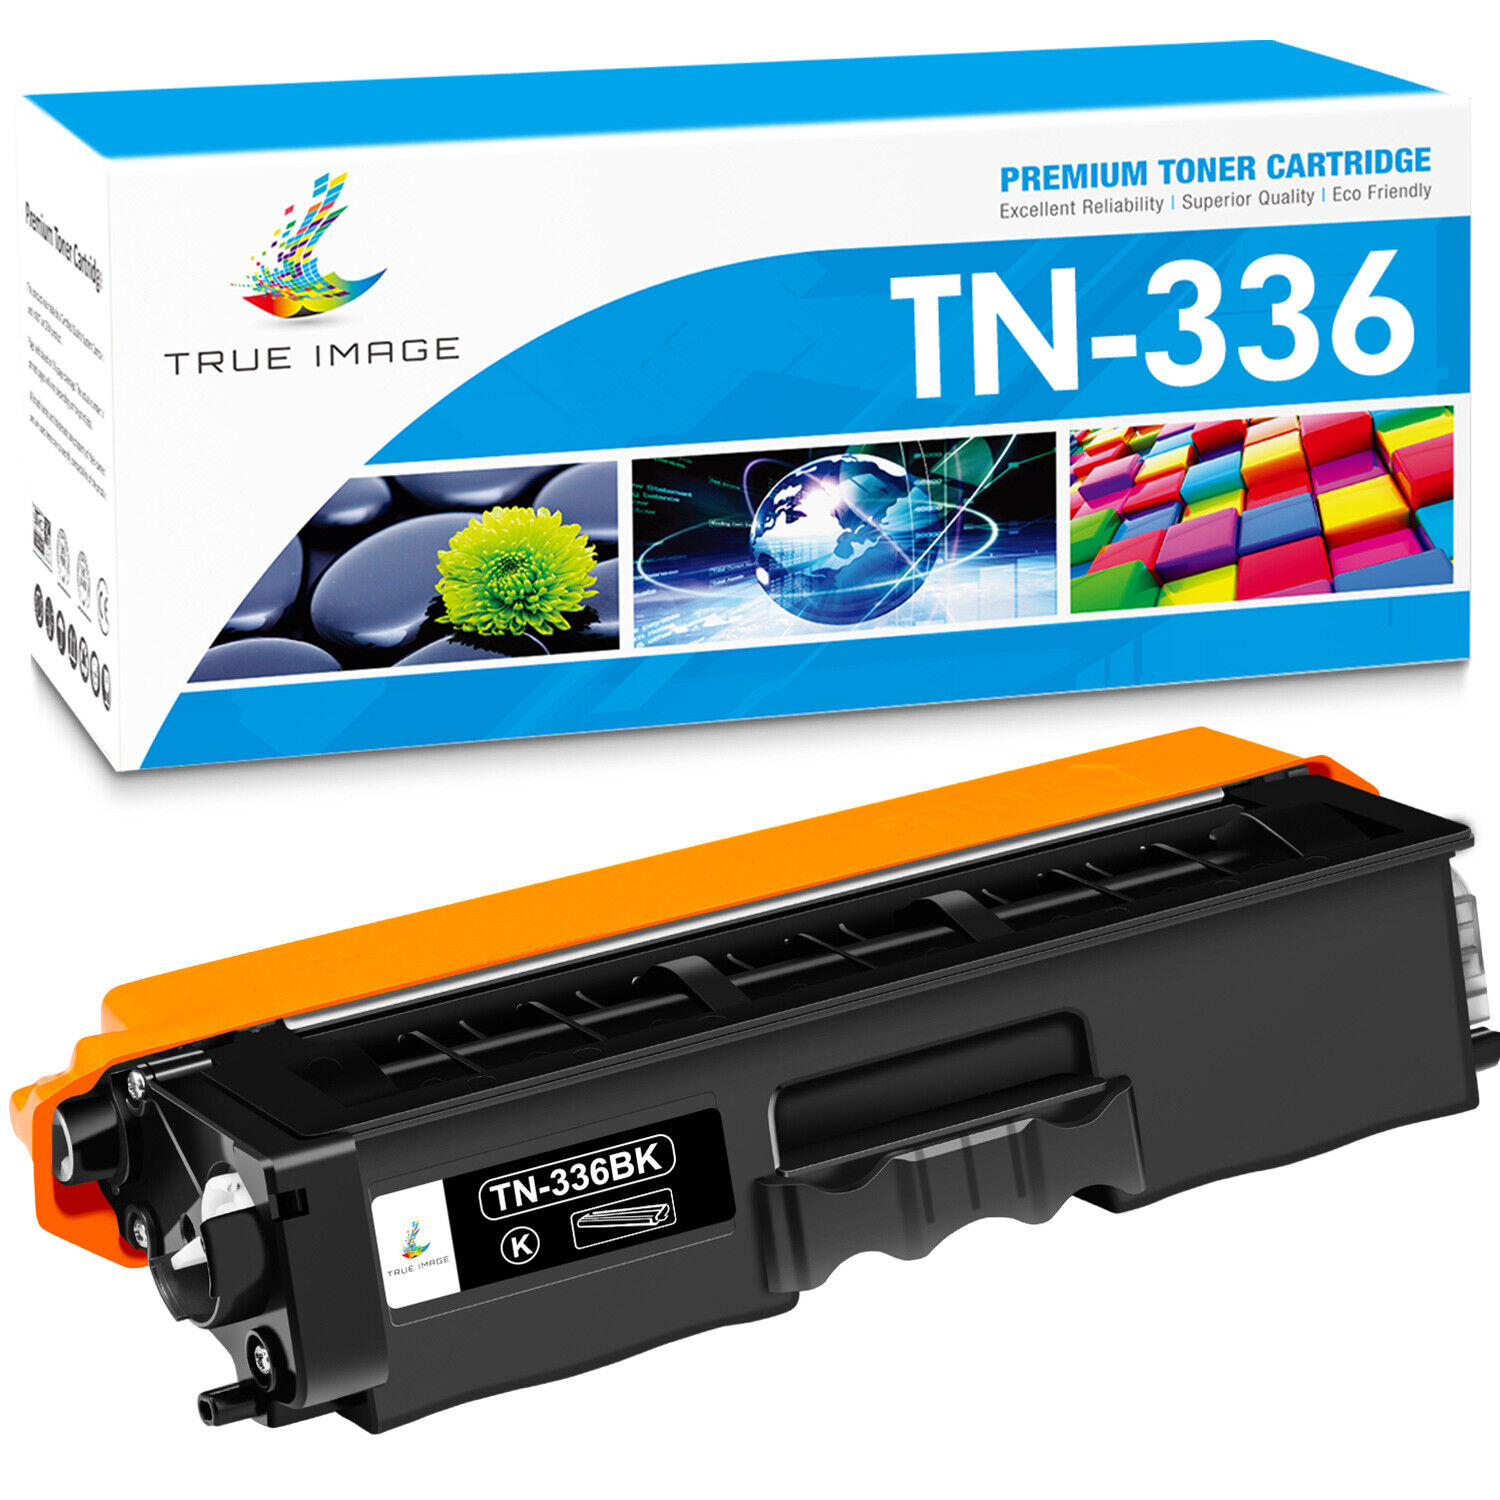 TN336 Toner Cartridge For Brother TN-336 HL-L8350CDW MFC-L8850CDW MFC-L8600CDW